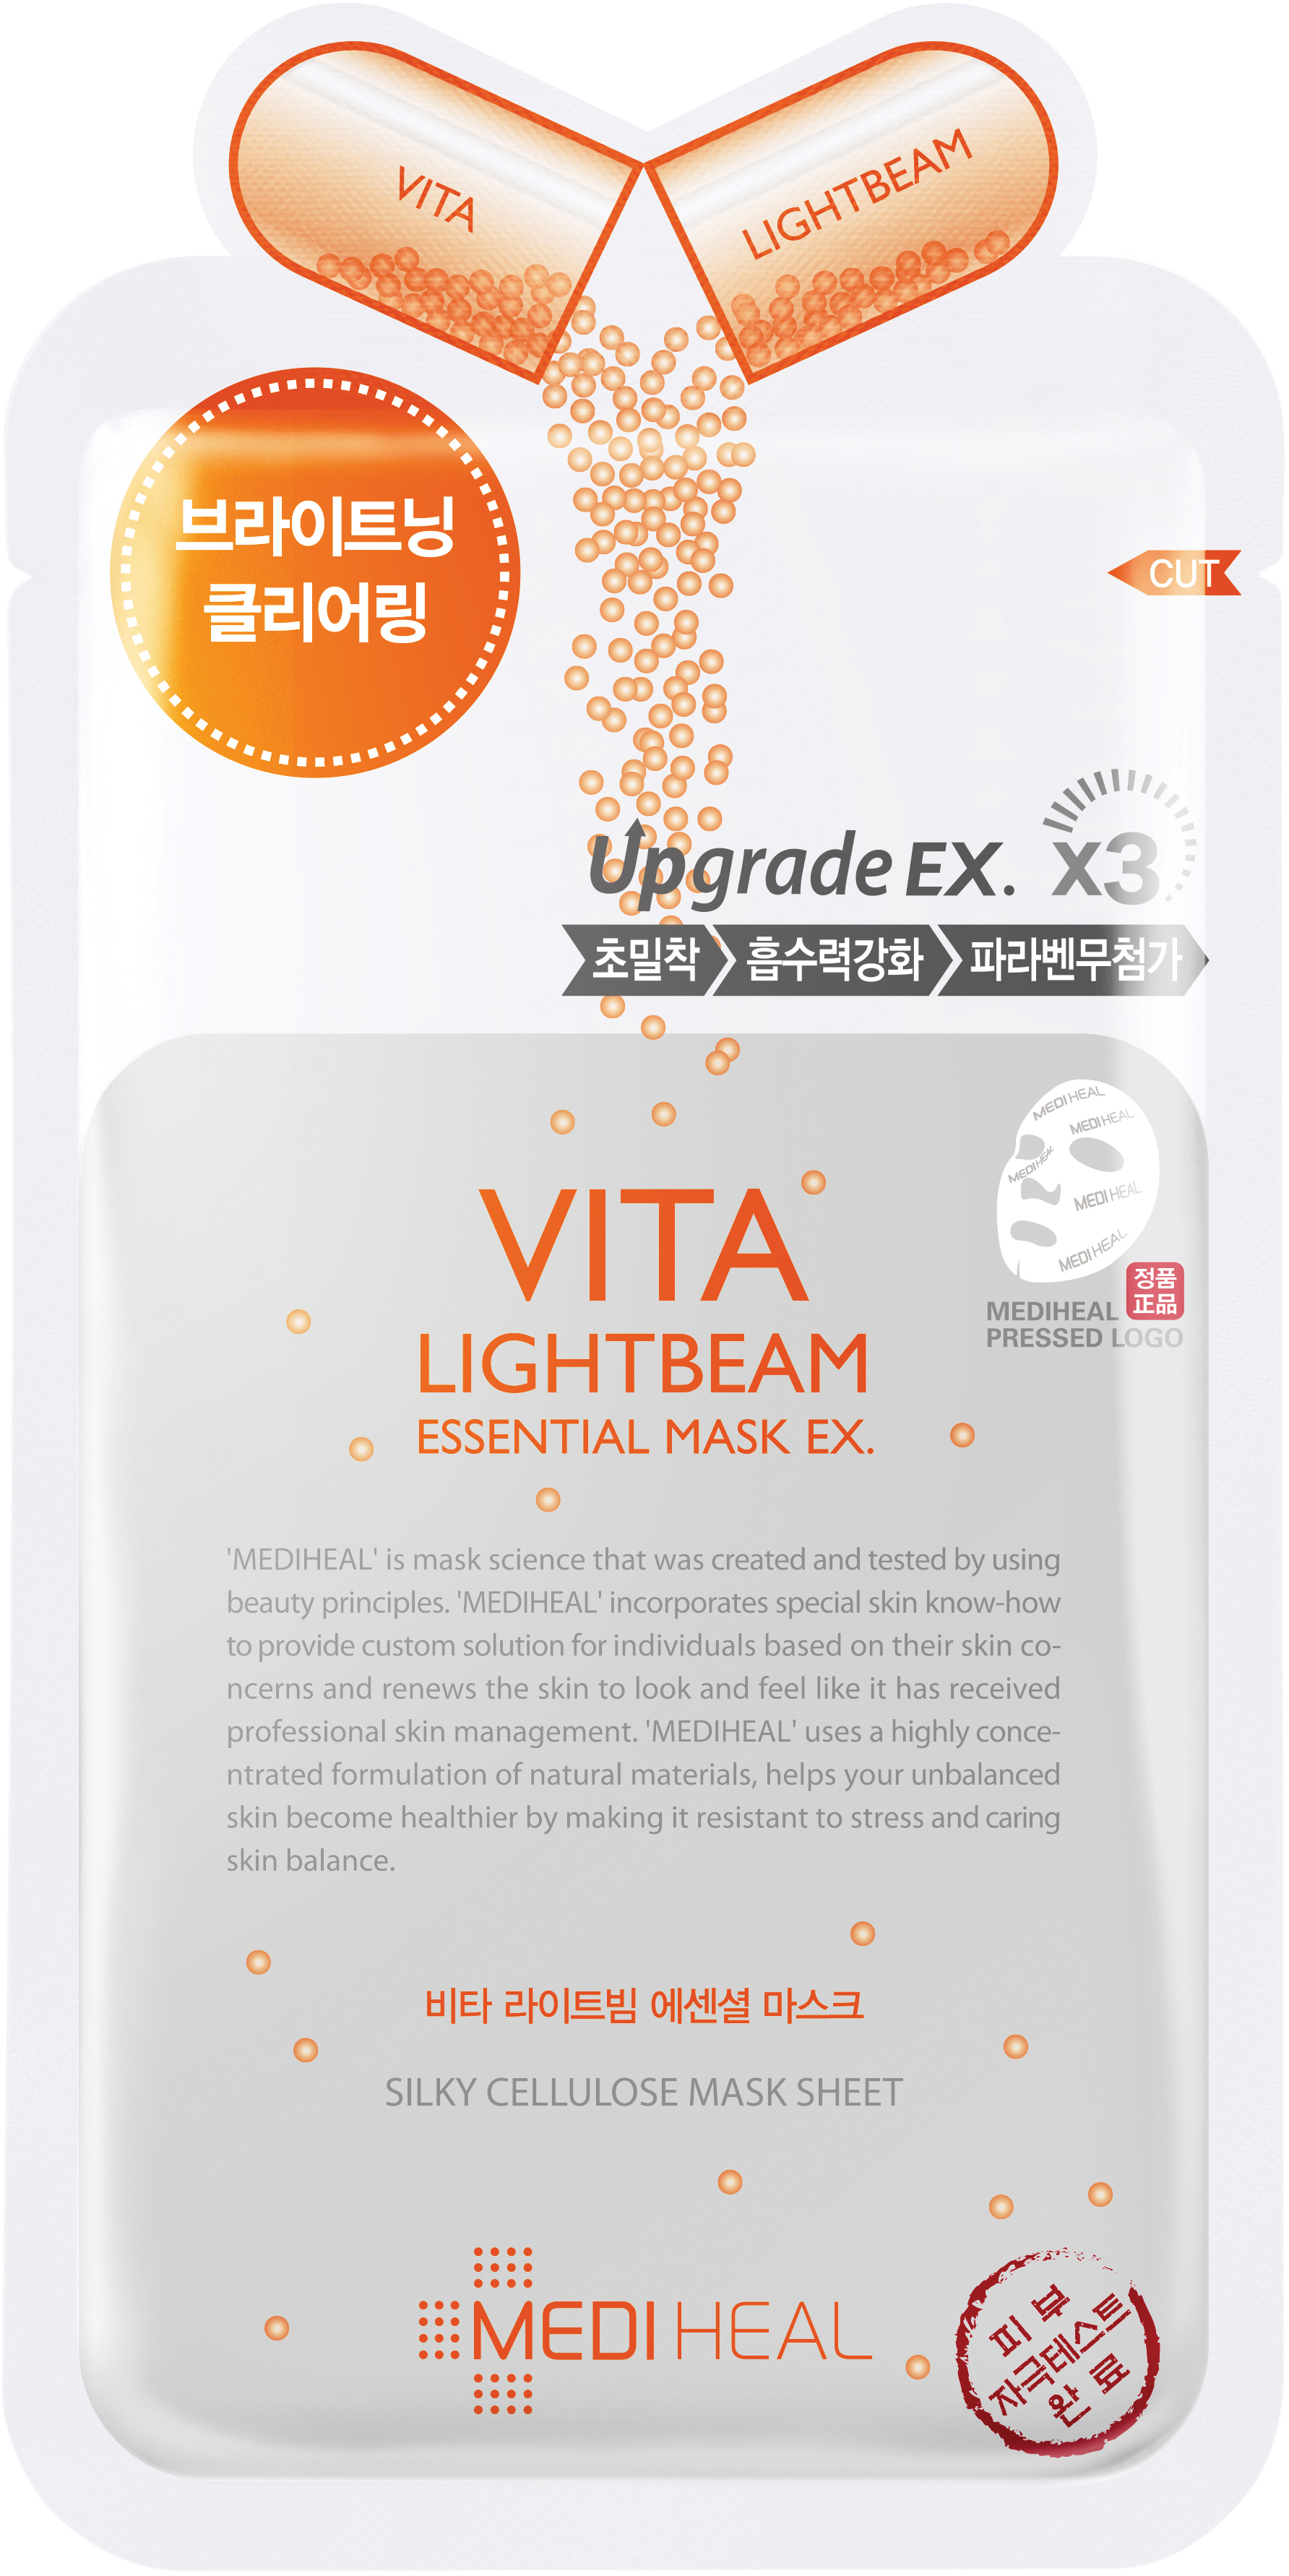 Mediheal Vita Lightbeam Essential Mask Ex. 24 ml